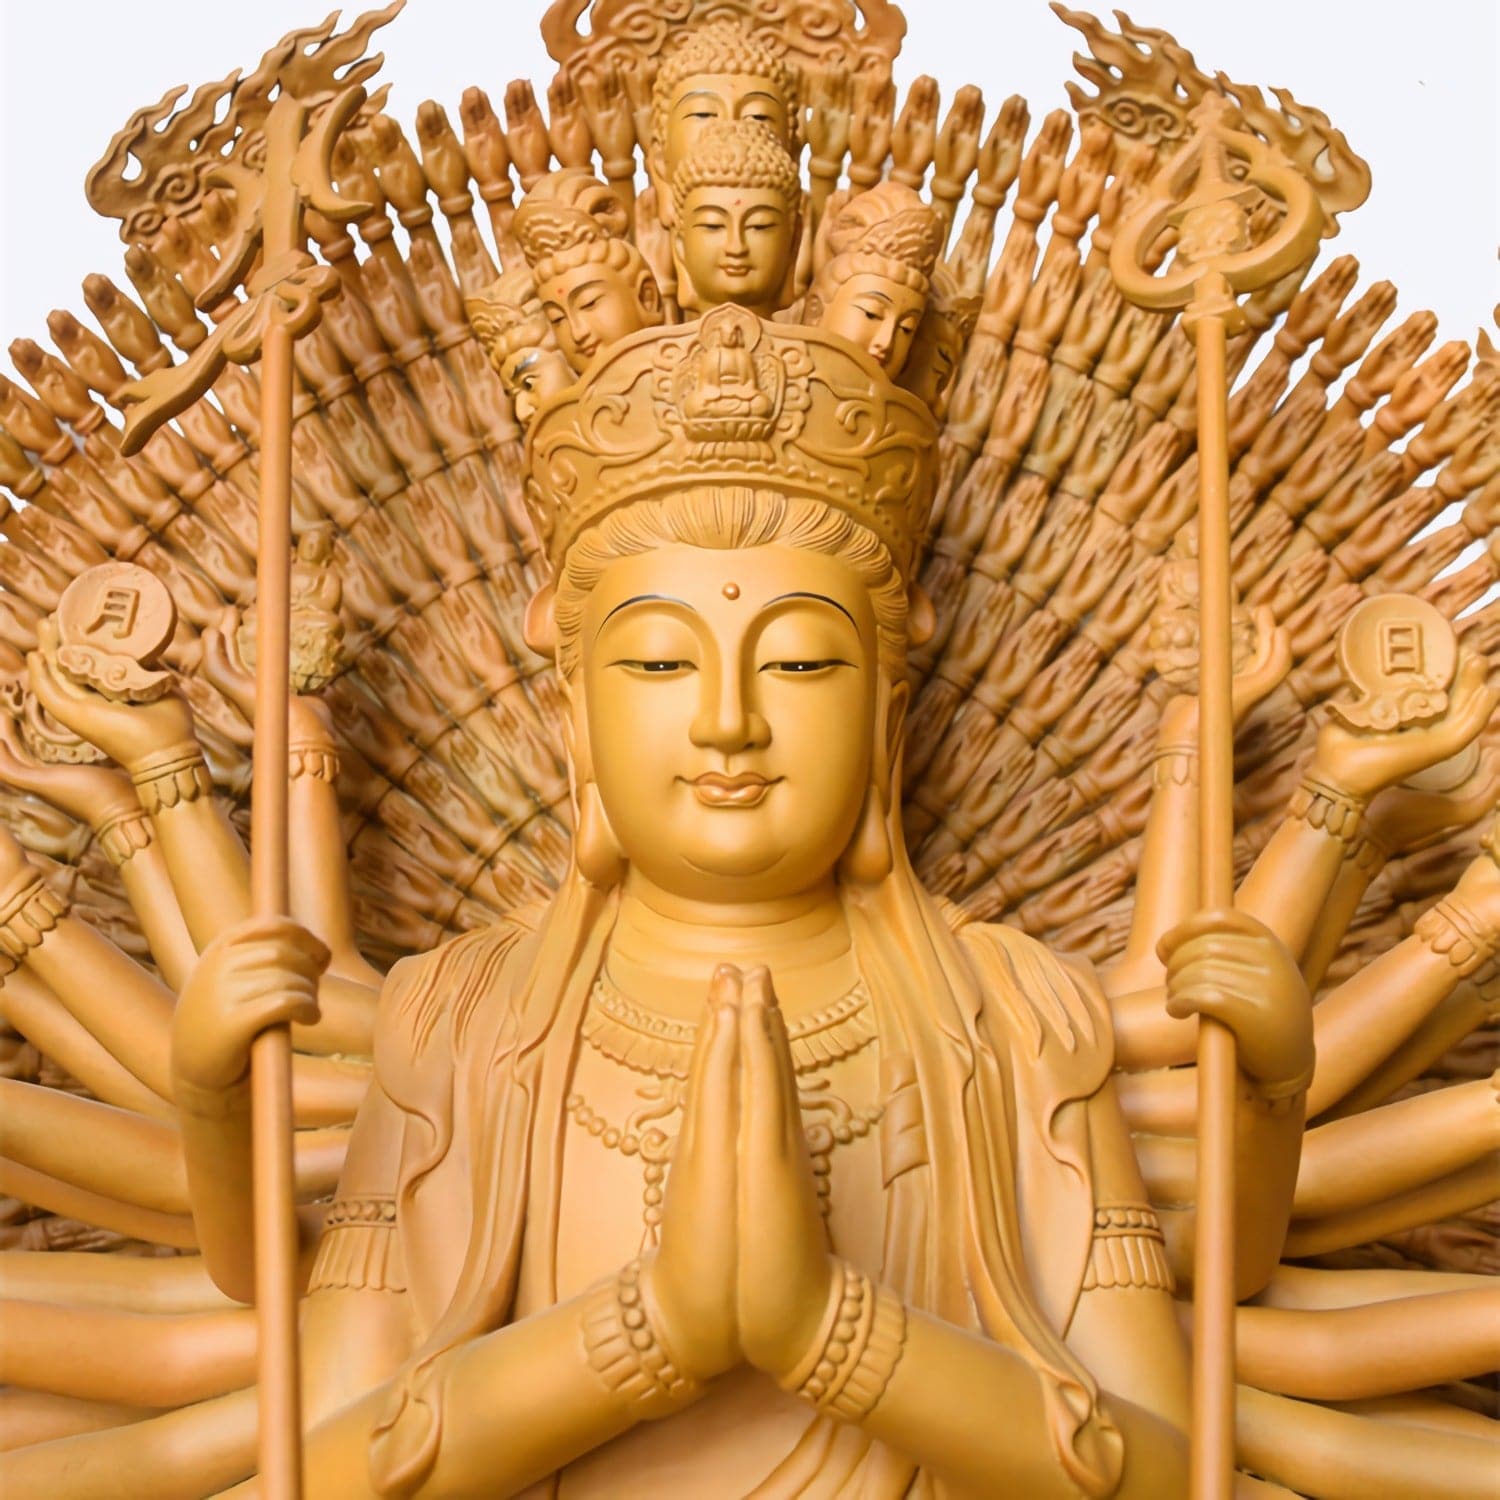 千手観音 手彫り木彫り仏像 全高25cm 風水では財物や幸せをかき集める ...